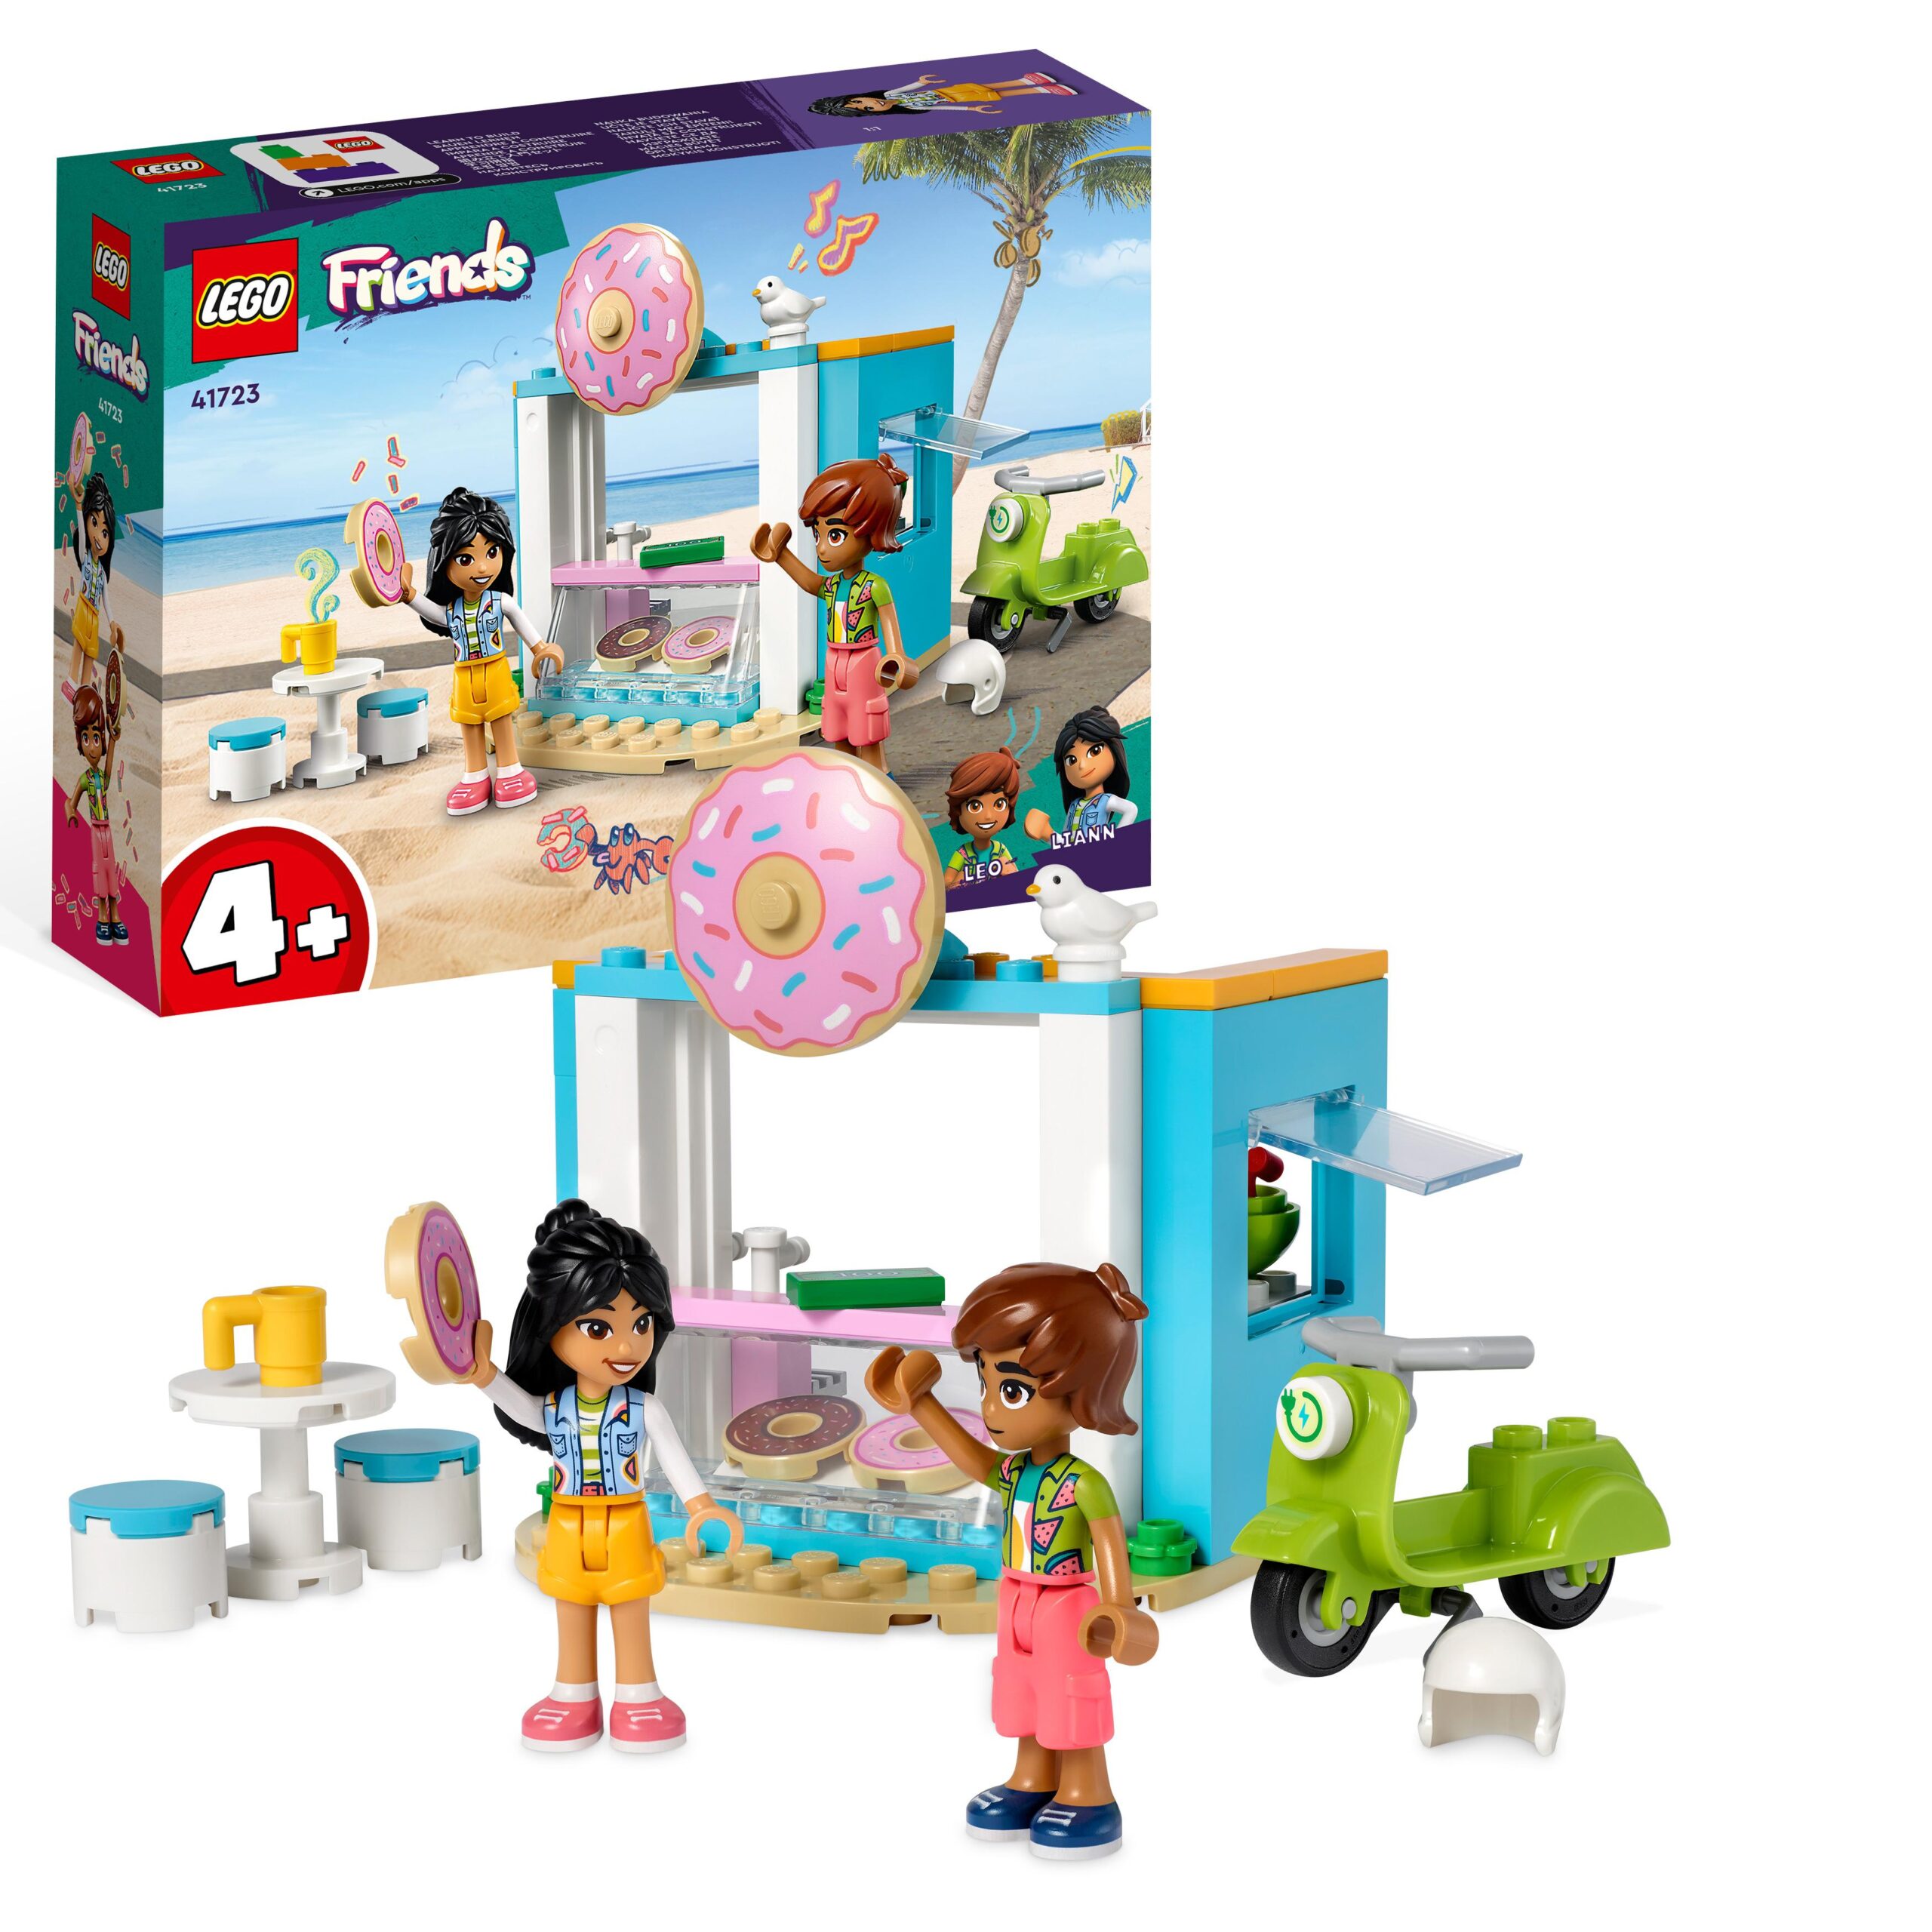 Lego friends 41723 negozio di ciambelle, giochi per bambini 4+ anni con  mini bamboline liann e leo e scooter, idea regalo - Toys Center